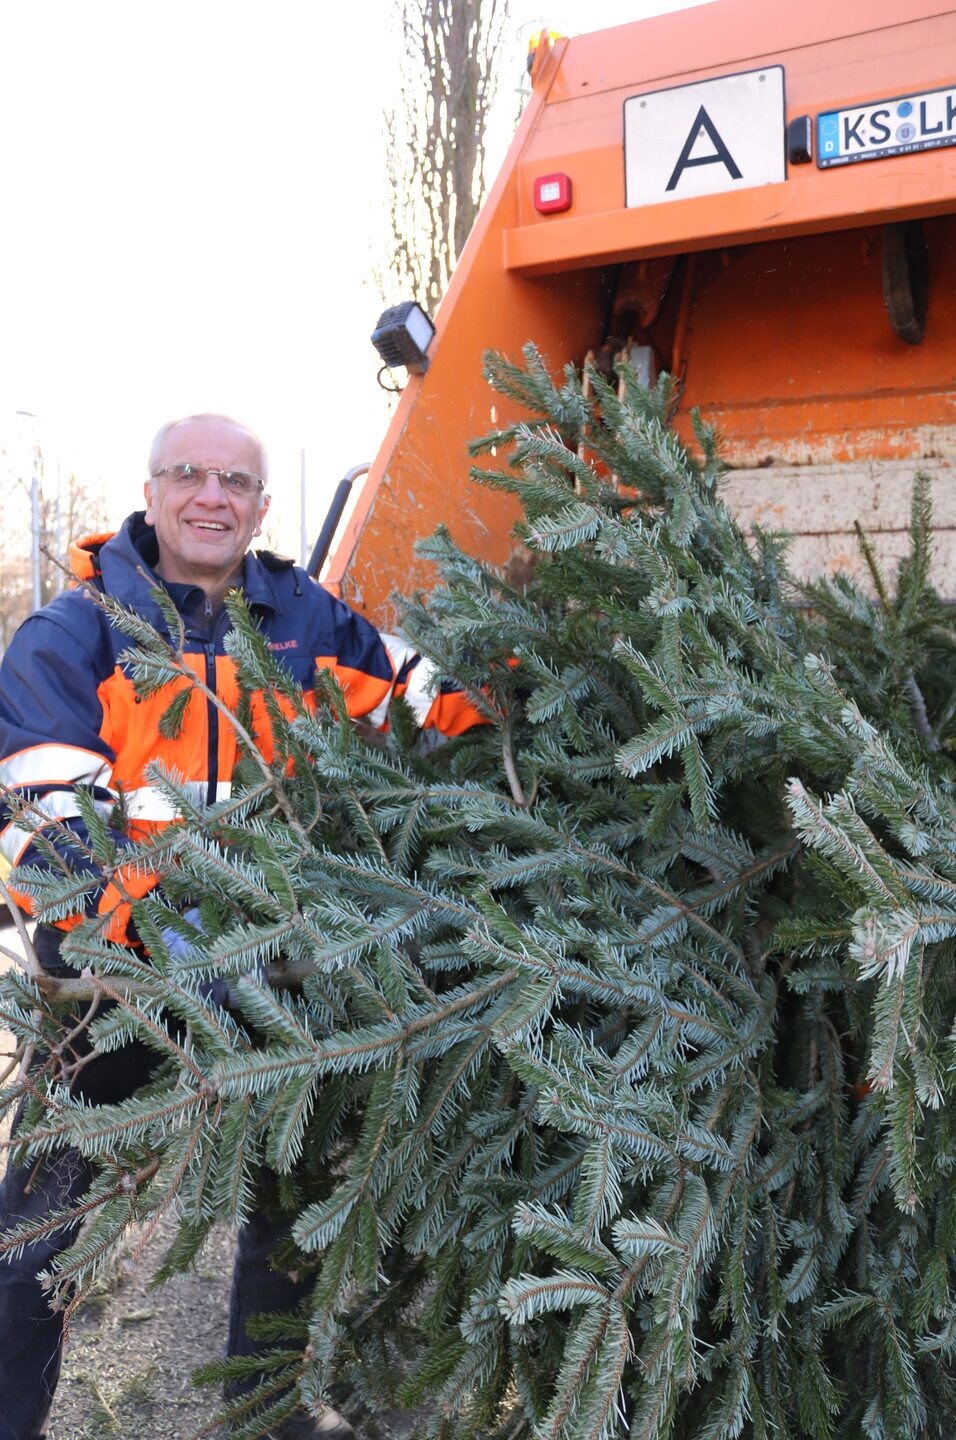 Die Abfallentsorgung Kreis Kassel holt rund 60.000 Weihnachtsbäume ab. Abteilungsleiter Carsten Mielke packt da gerne selbst mit an.